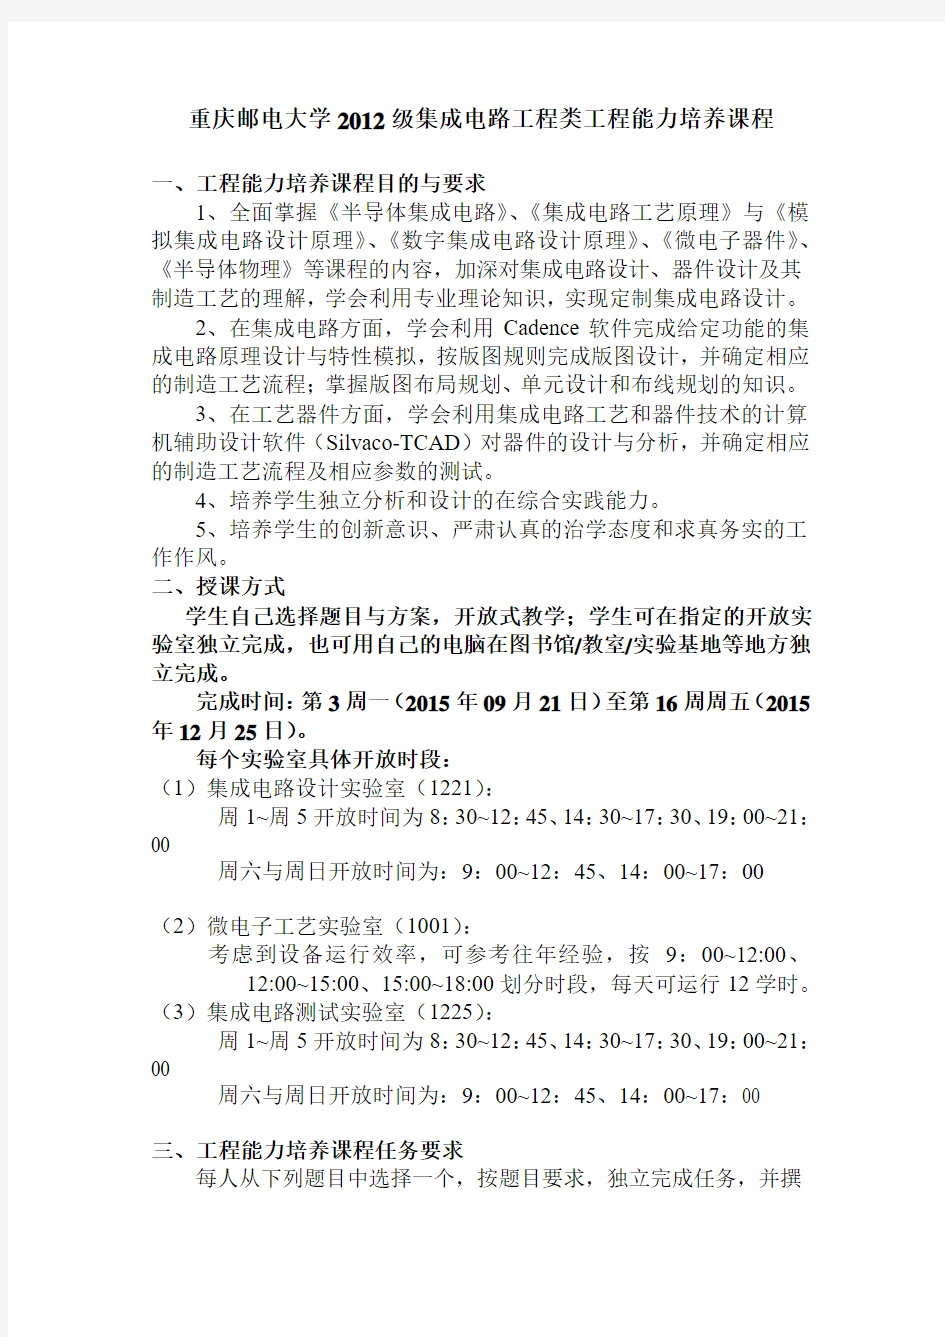 重庆邮电大学2012级集成电路工程类工程能力培养课程